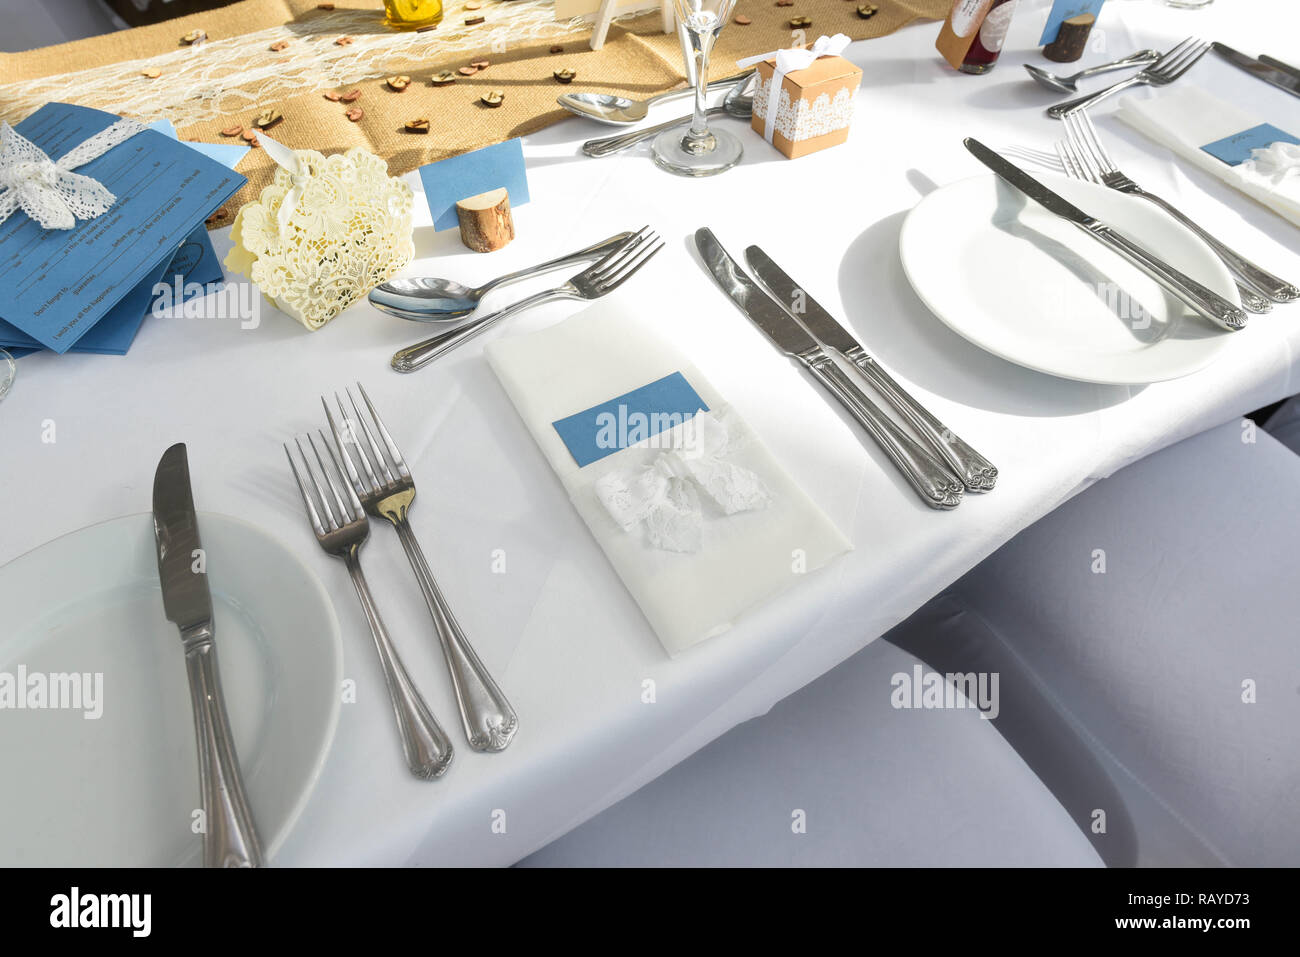 Wedding table setting, wedding planning celebration Stock Photo